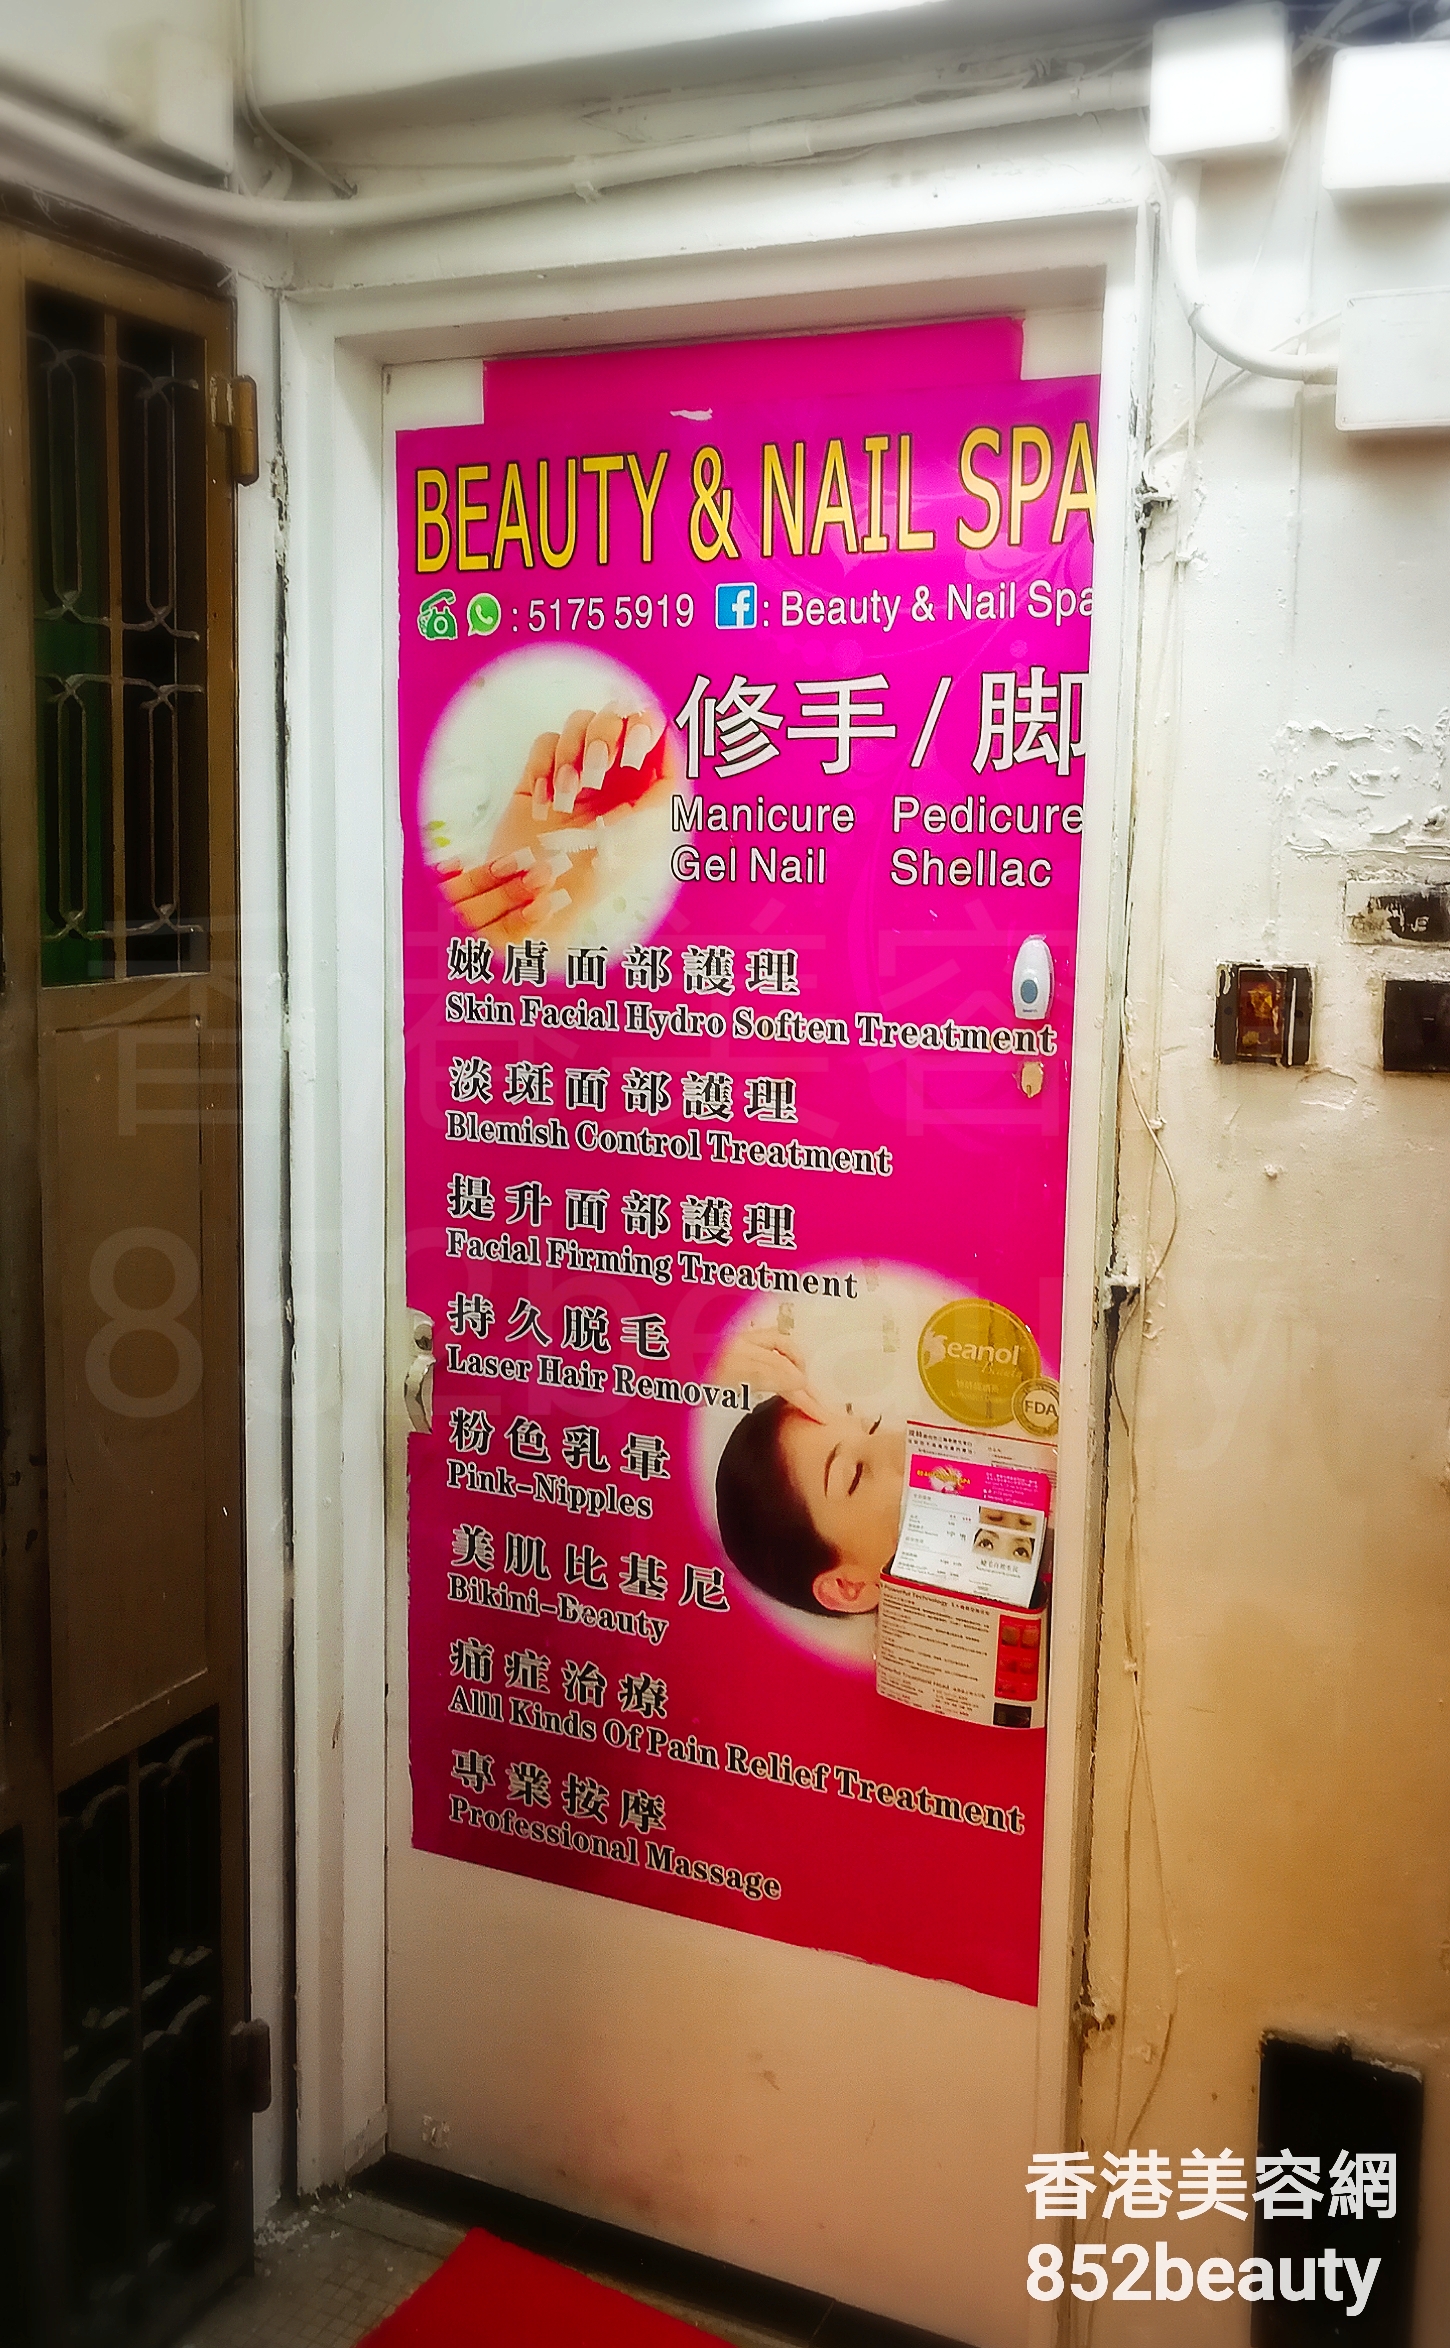 面部护理: Beauty & Nail Spa